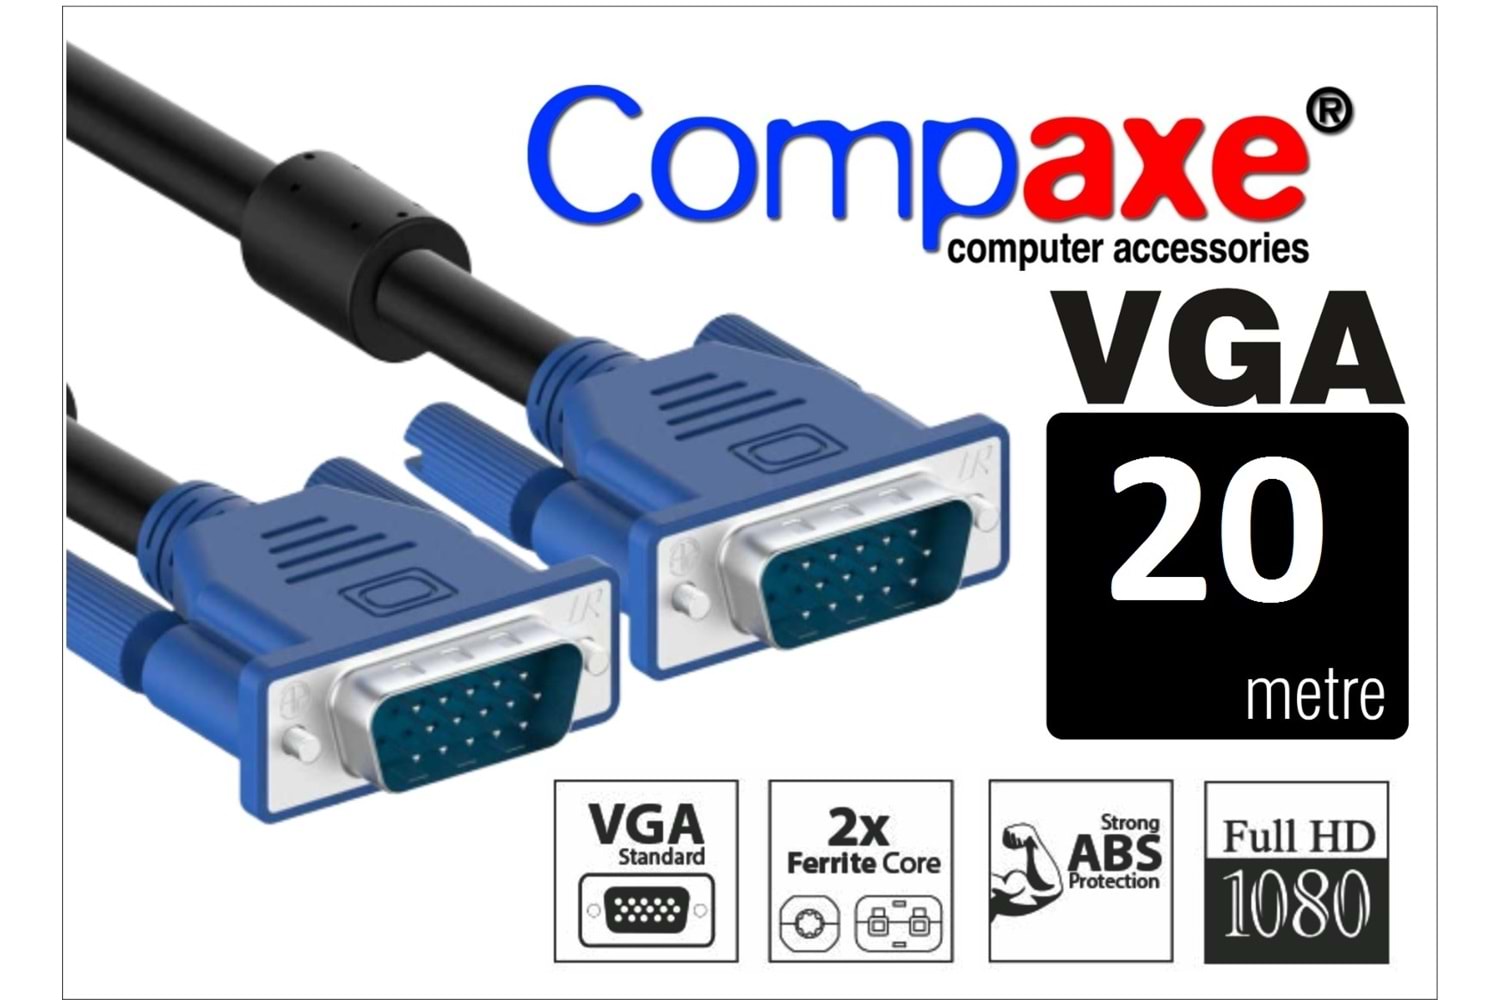 COMPAXE CM-VGA 20 VGA KABLOSU (FİLİTRELİ)